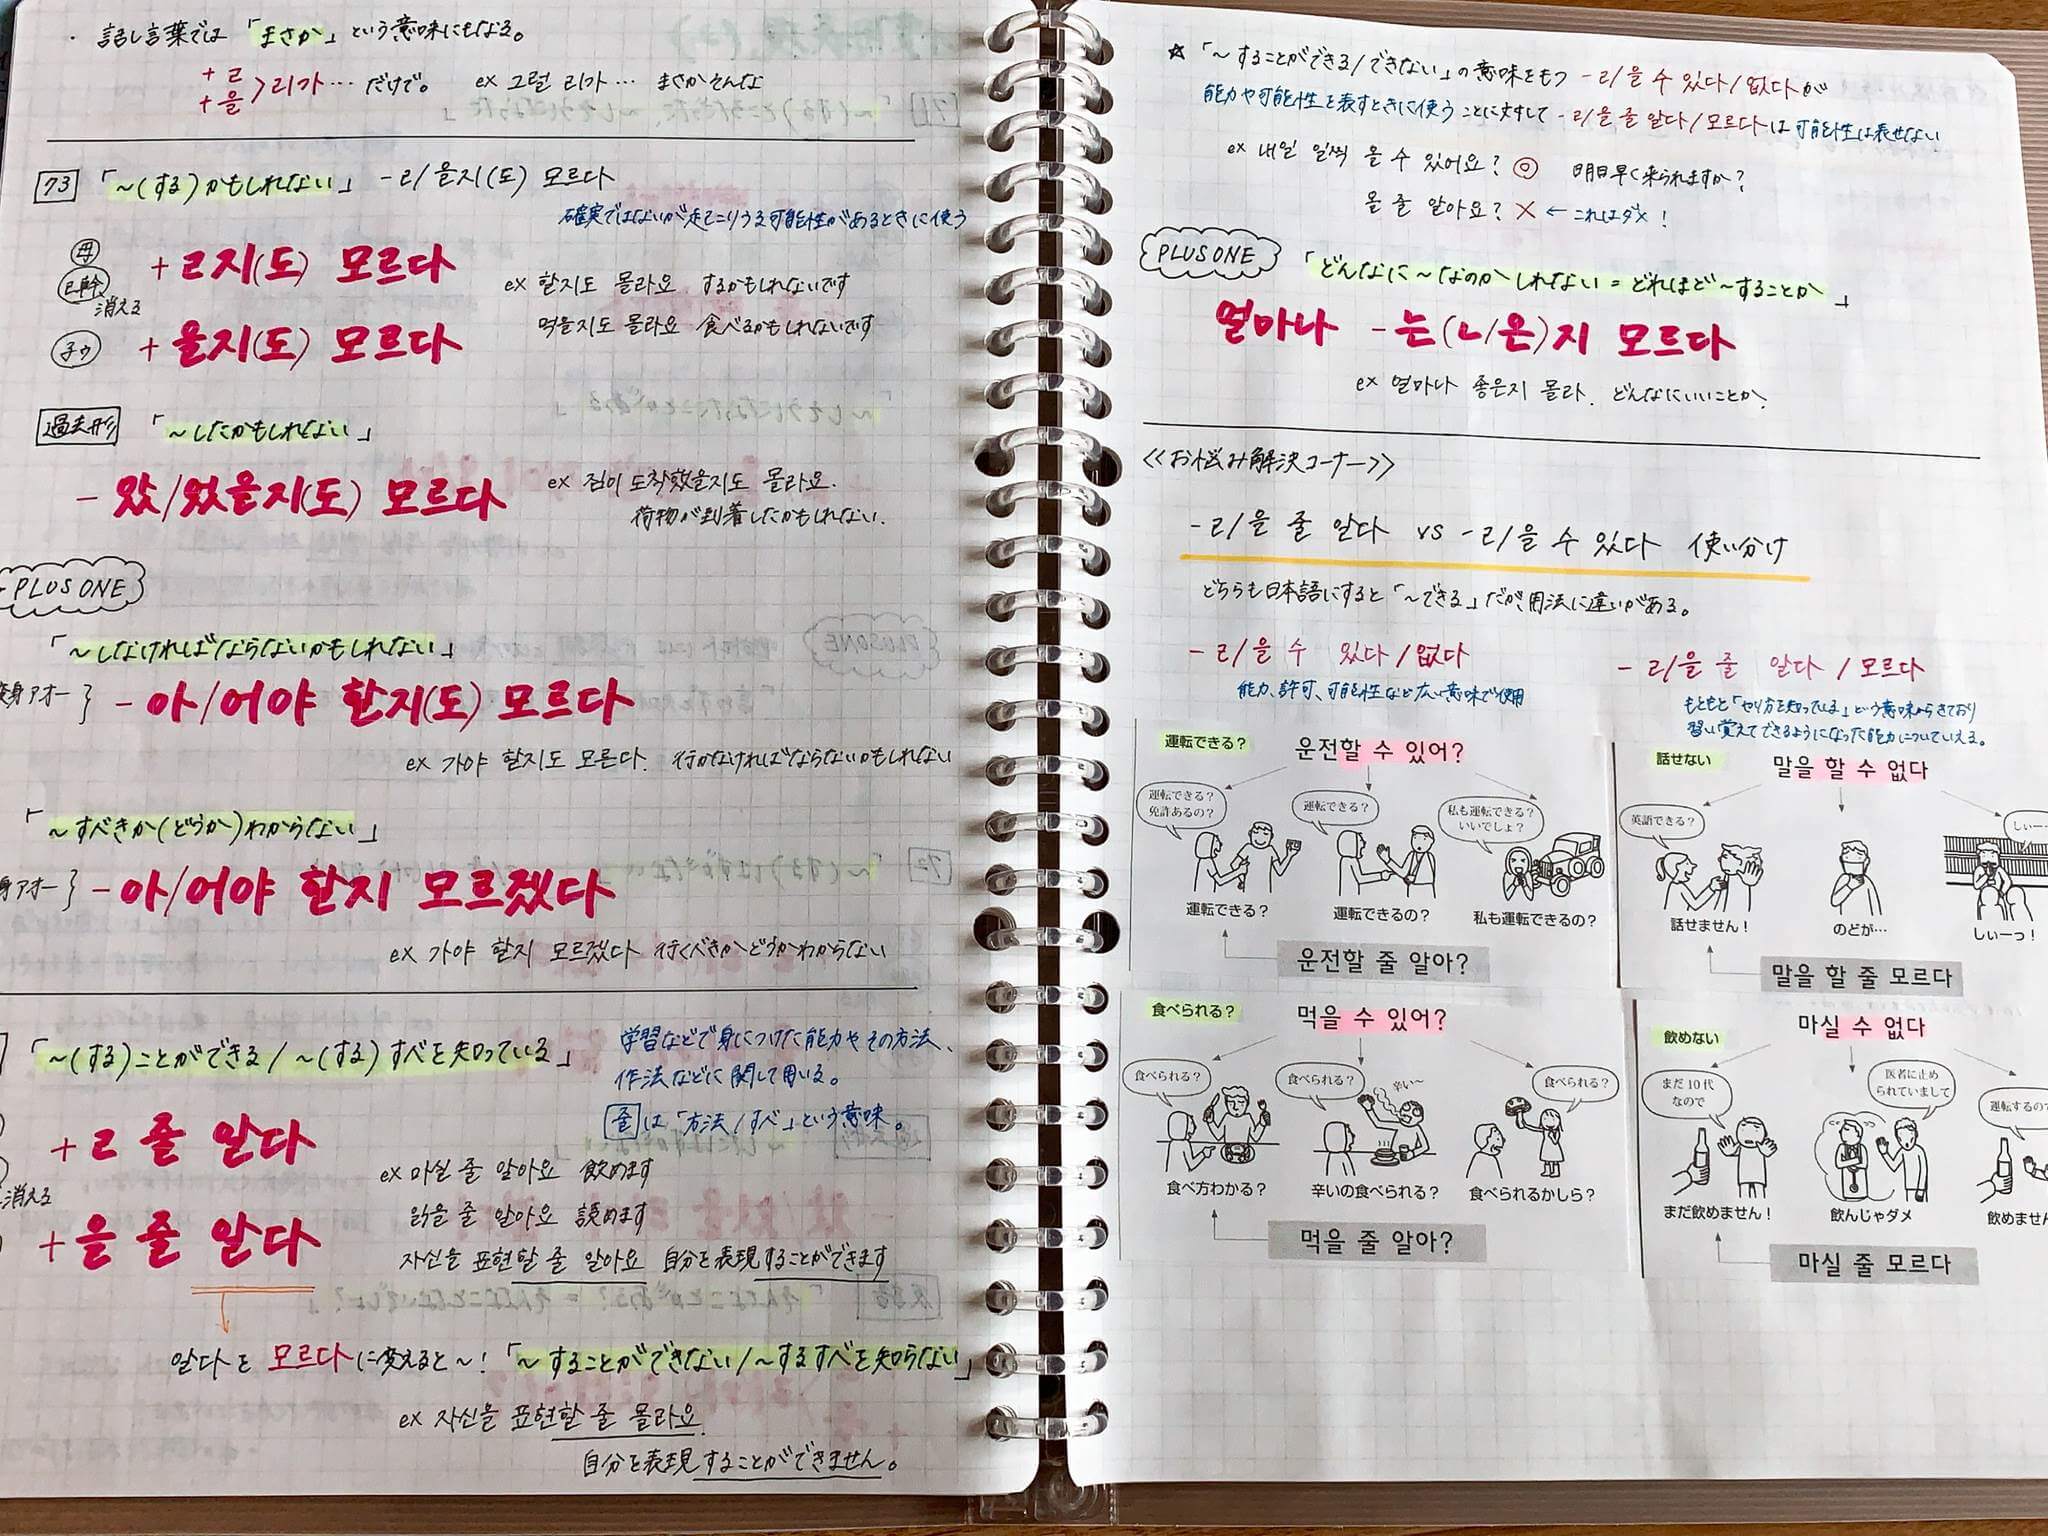 延世大学編 独学でtopik5 韓国語の勉強方法について聞いてみた Ppyong